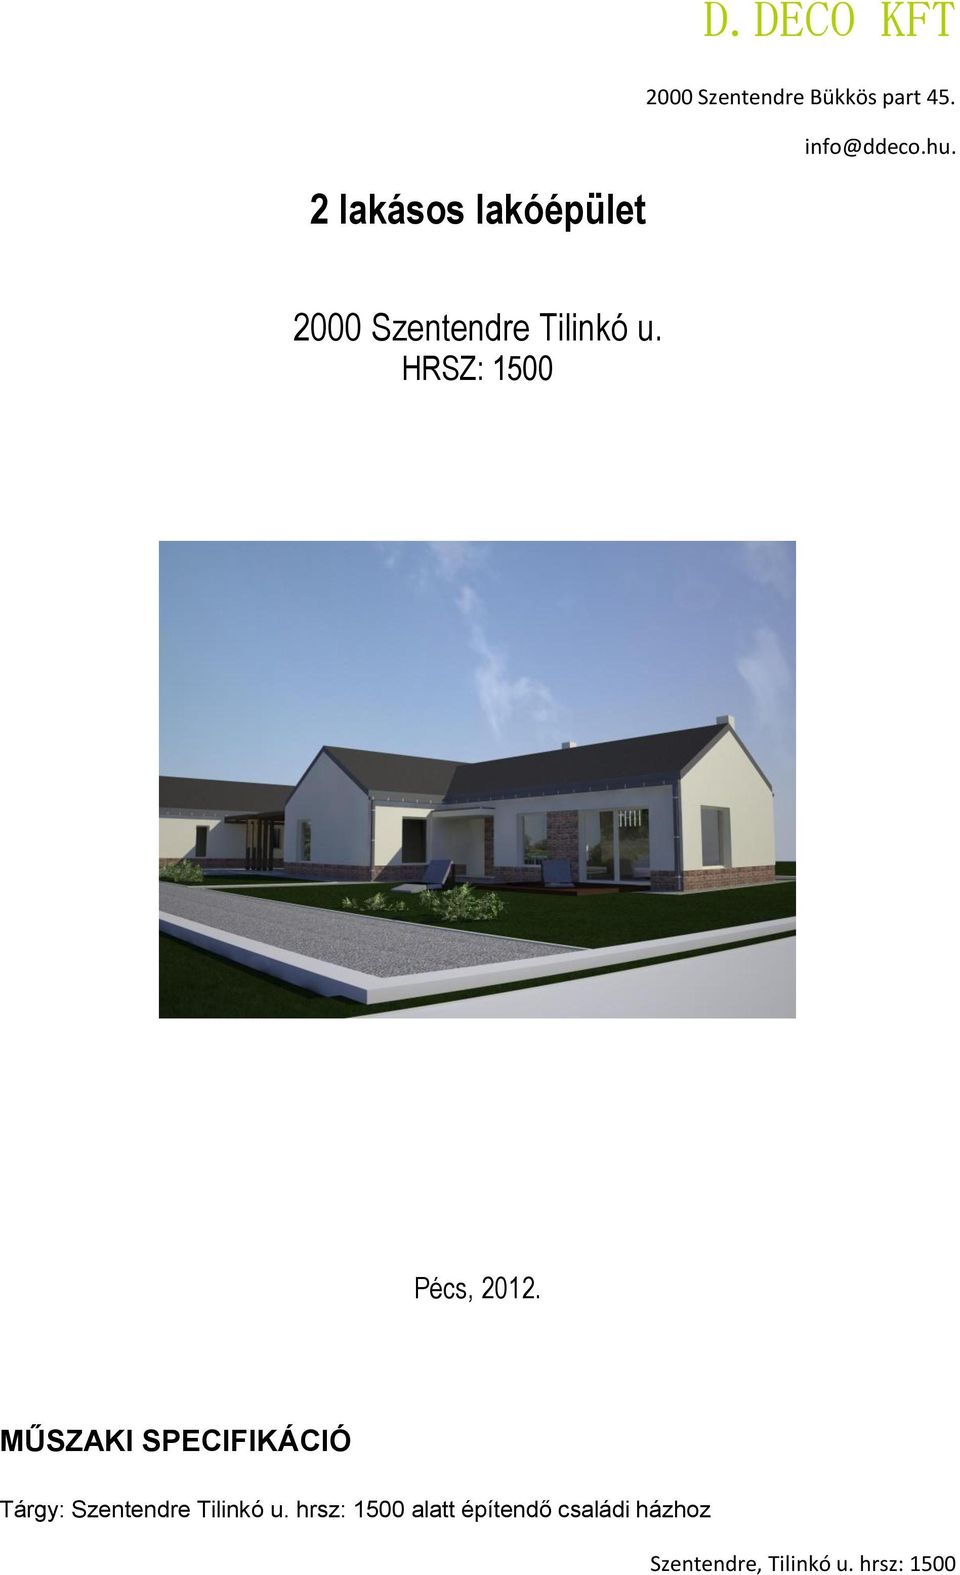 D.DECO KFT. 2 lakásos lakóépület Szentendre Tilinkó u. HRSZ: Pécs, MŰSZAKI  SPECIFIKÁCIÓ Szentendre Bükkös part PDF Free Download